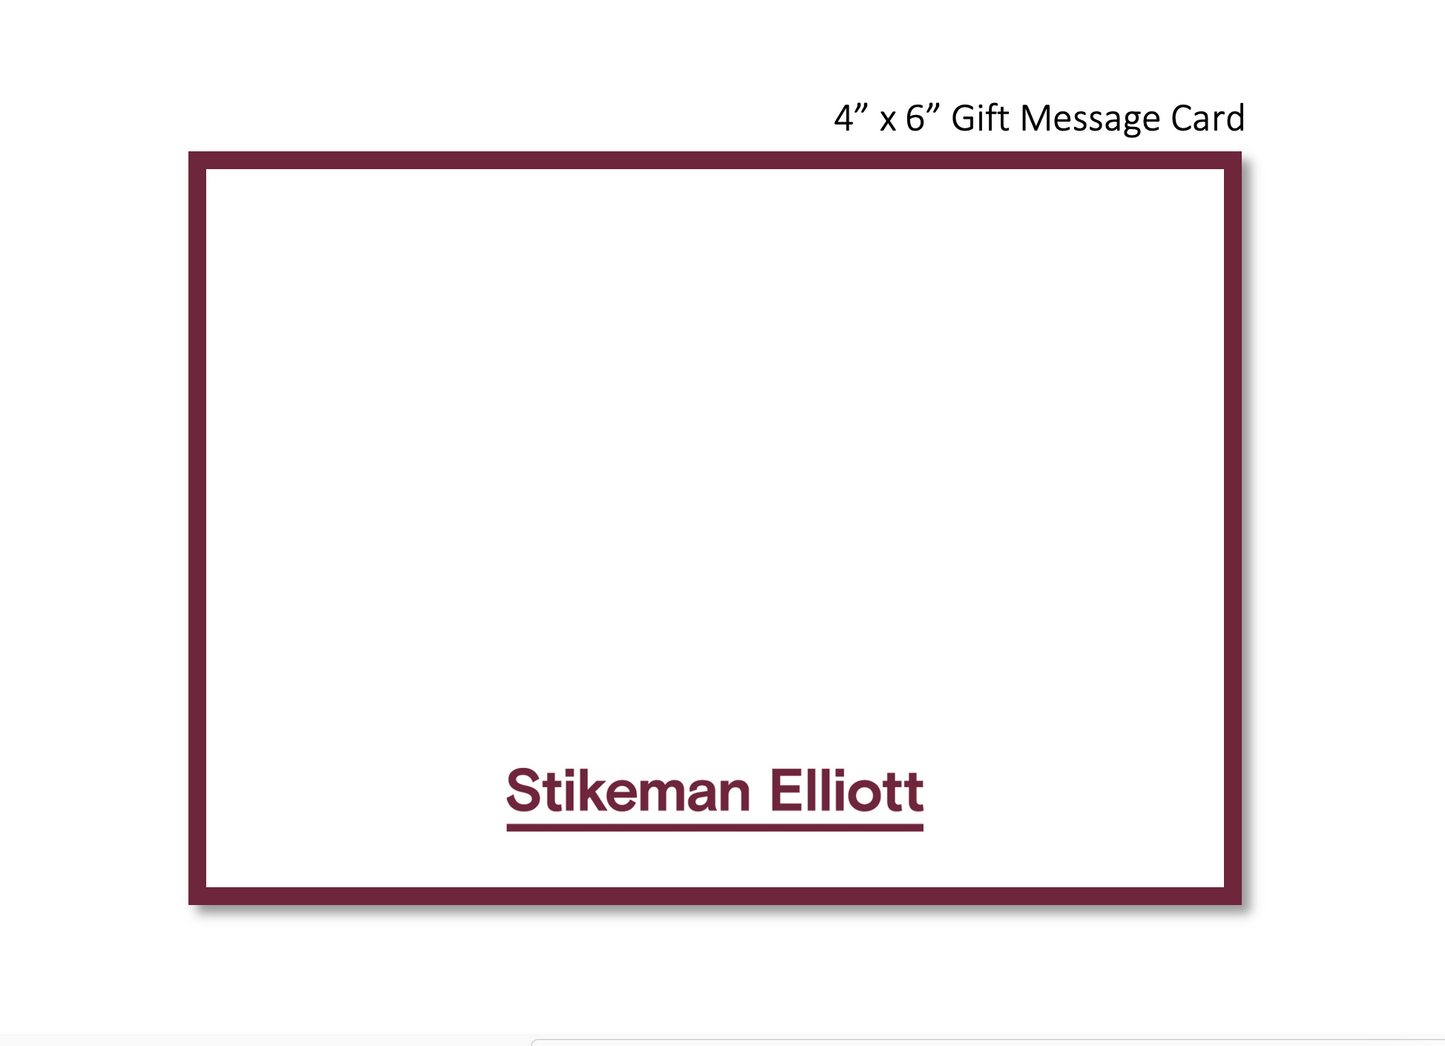 Stikeman Elliott Gift Message